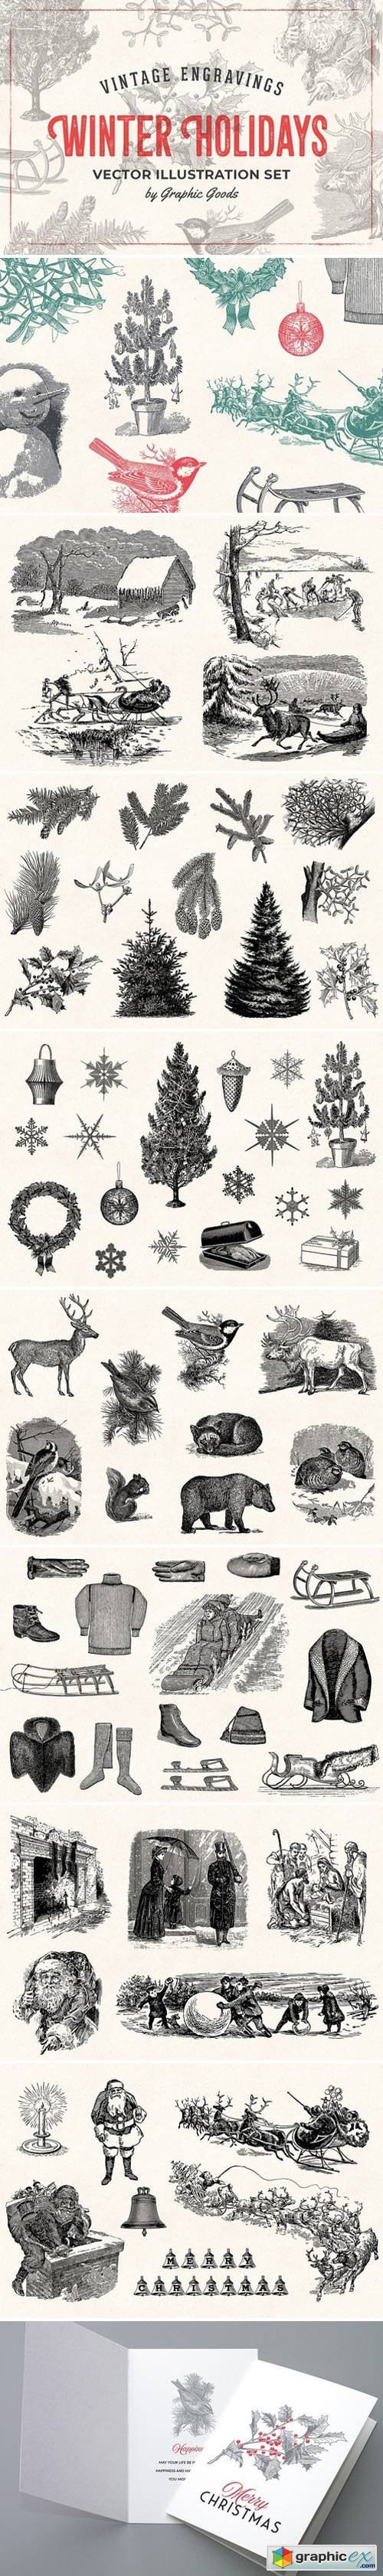 Winter Holidays - Vintage Engravings